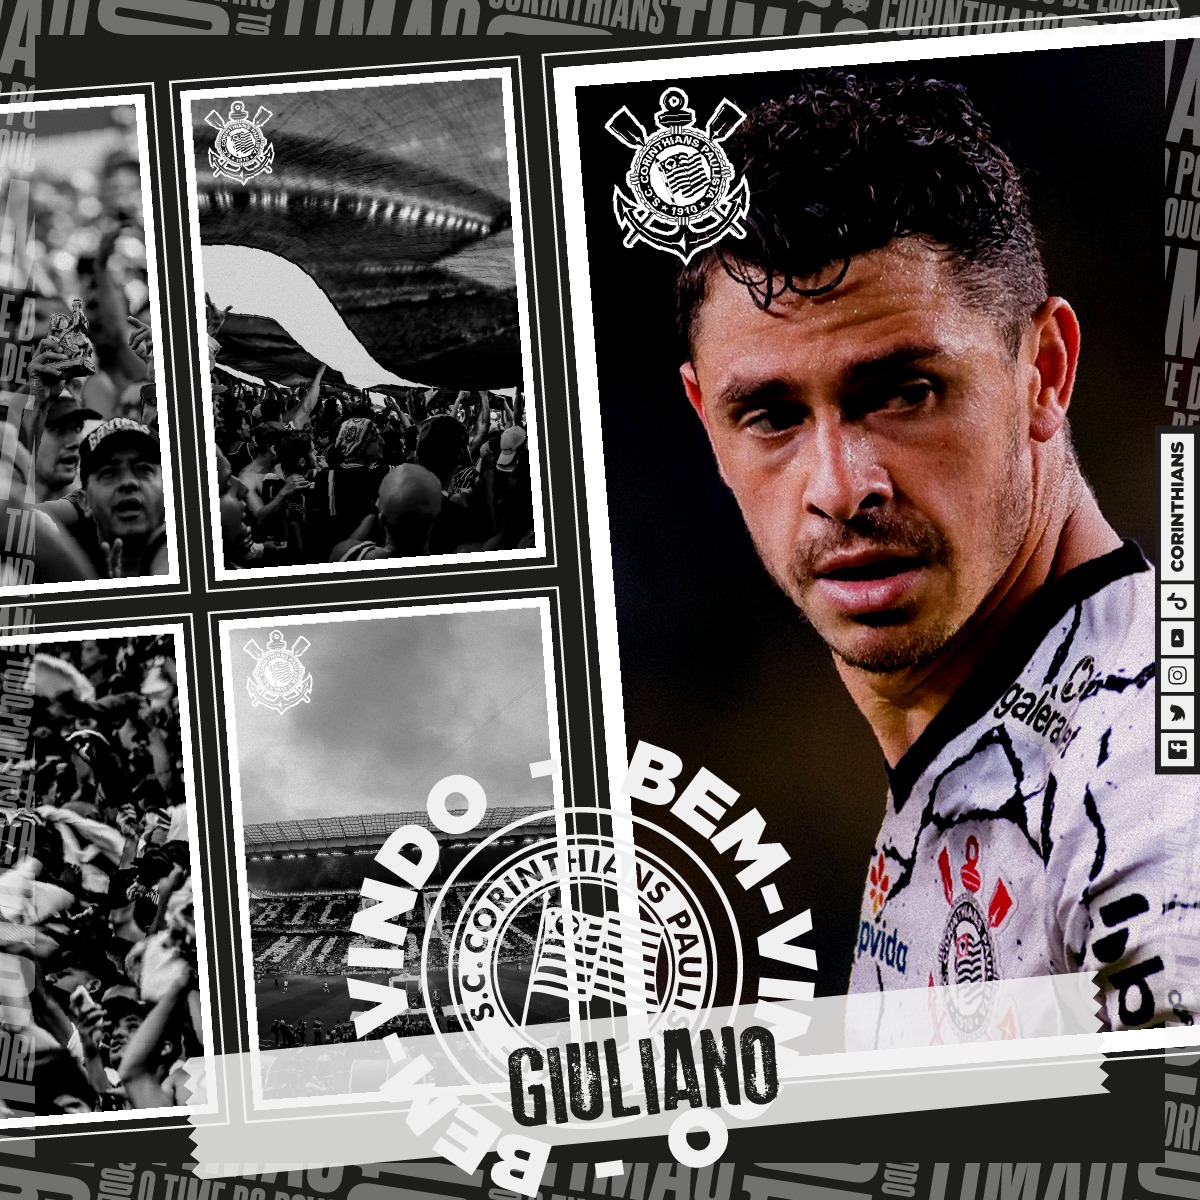 Em montagem, Giuliano aparece com a camisa do Corinthians